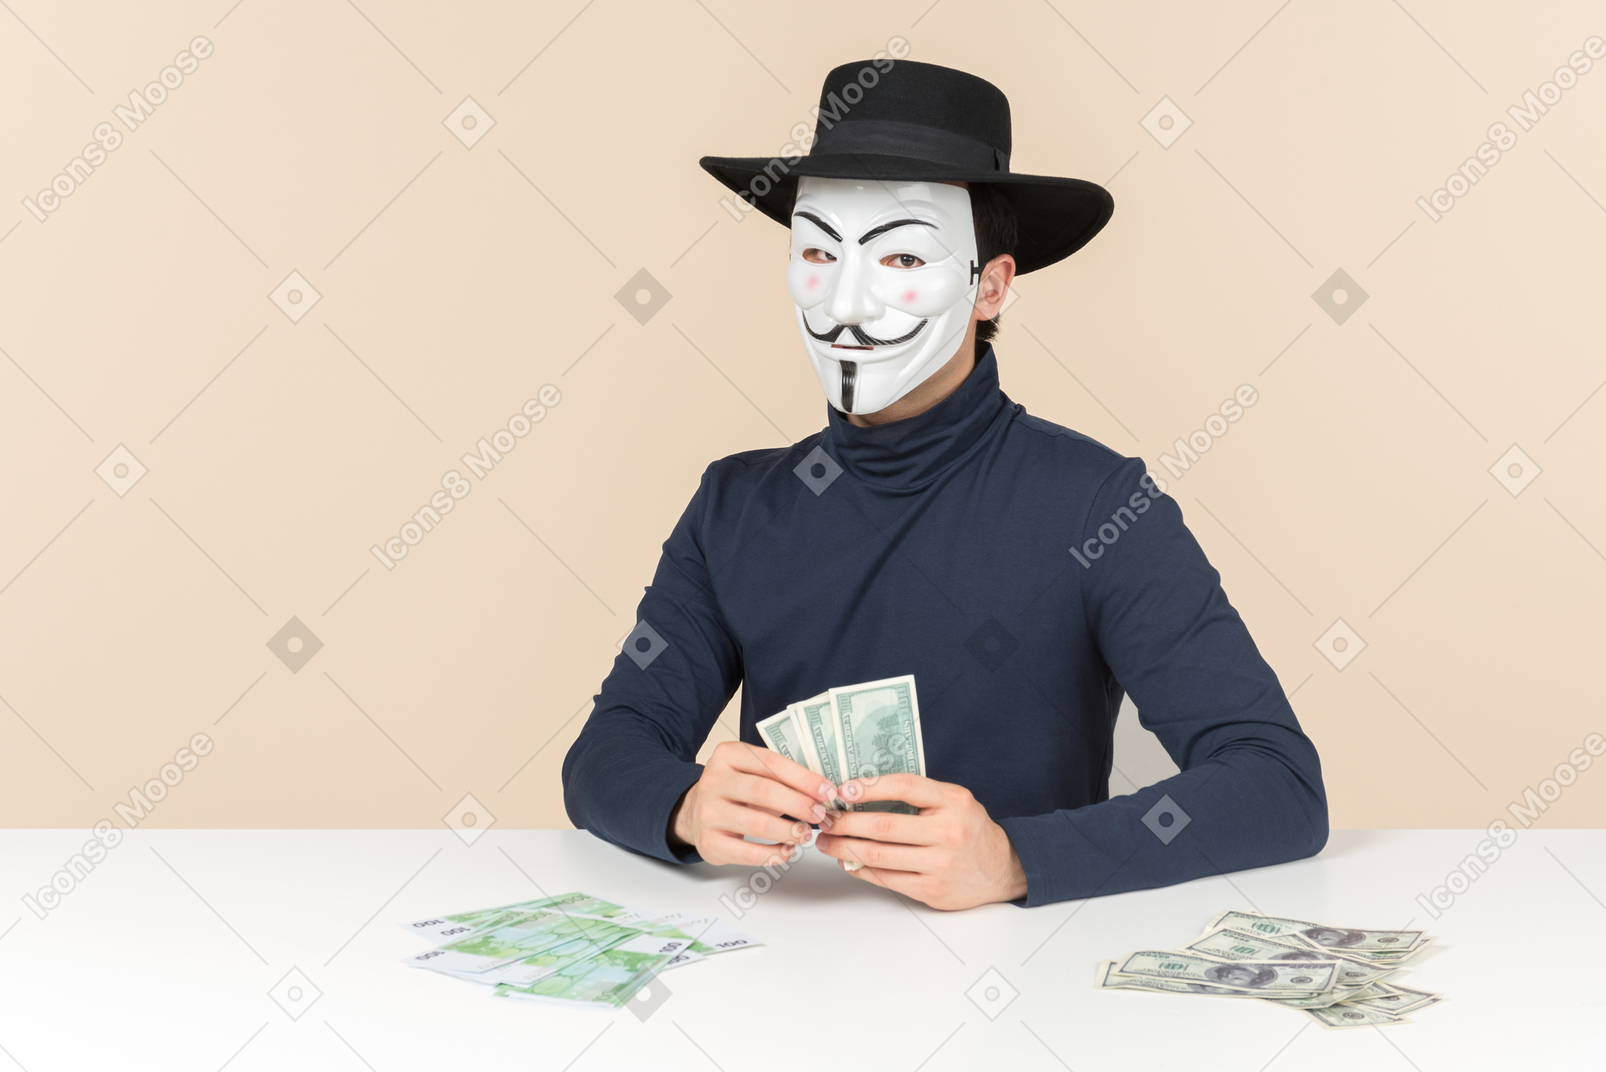 テーブルに座っているとお金を数えるvendettaマスクを着ているハッカー